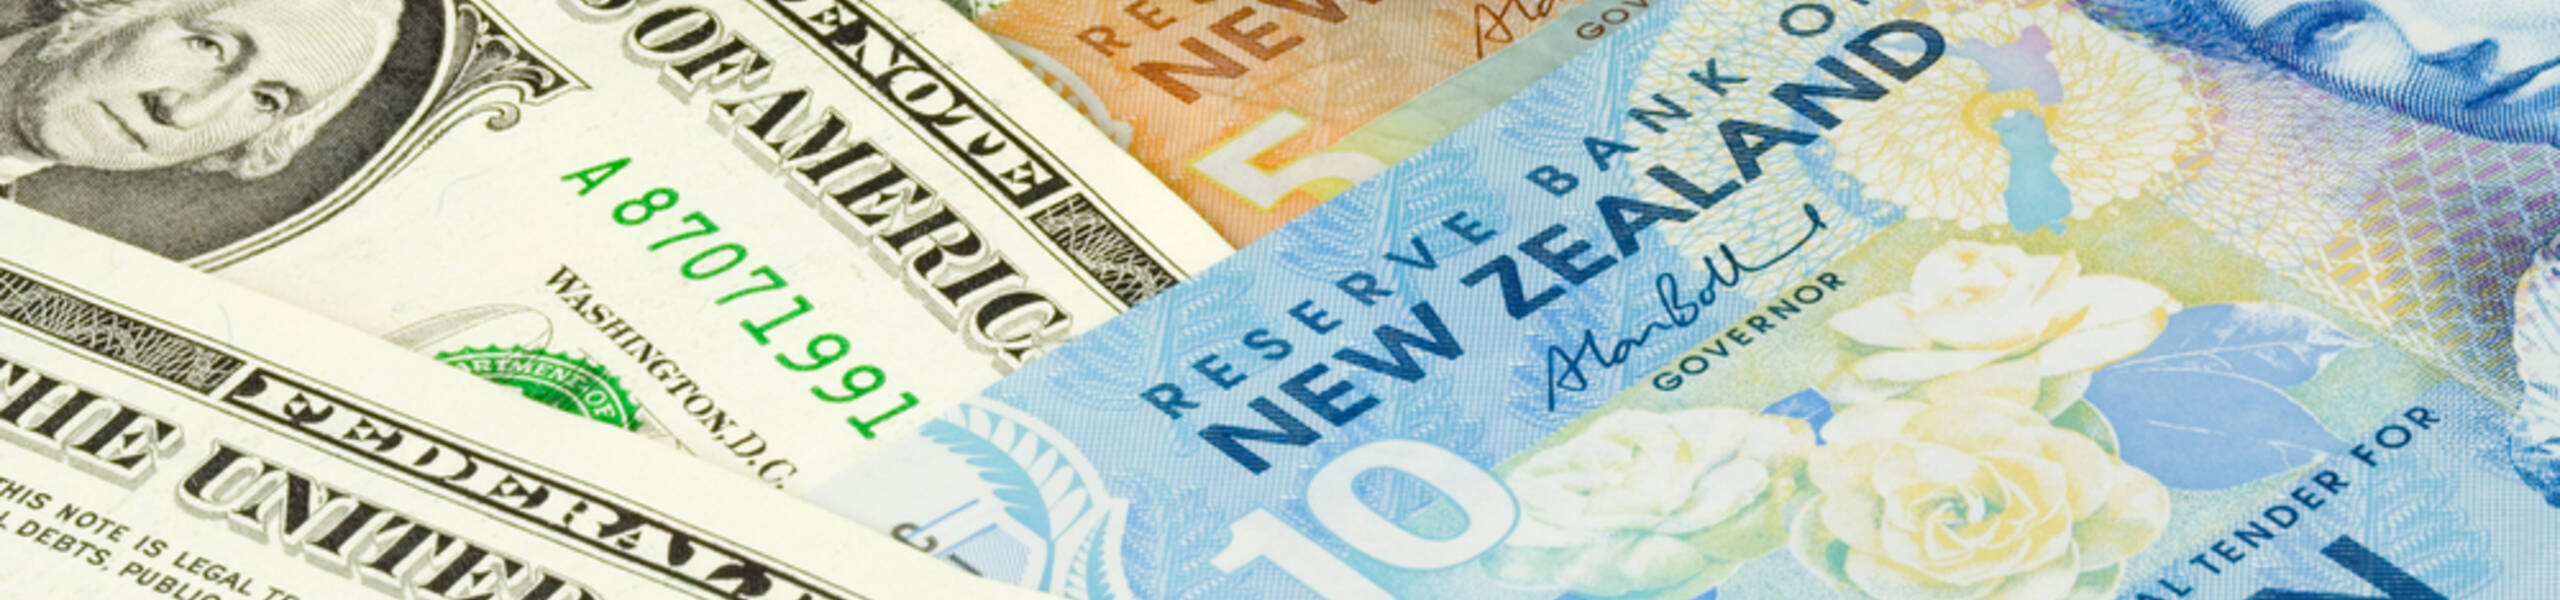 Kế hoạch giao dịch cặp ngoại tệ NZDUSD ngày 20/03/2019